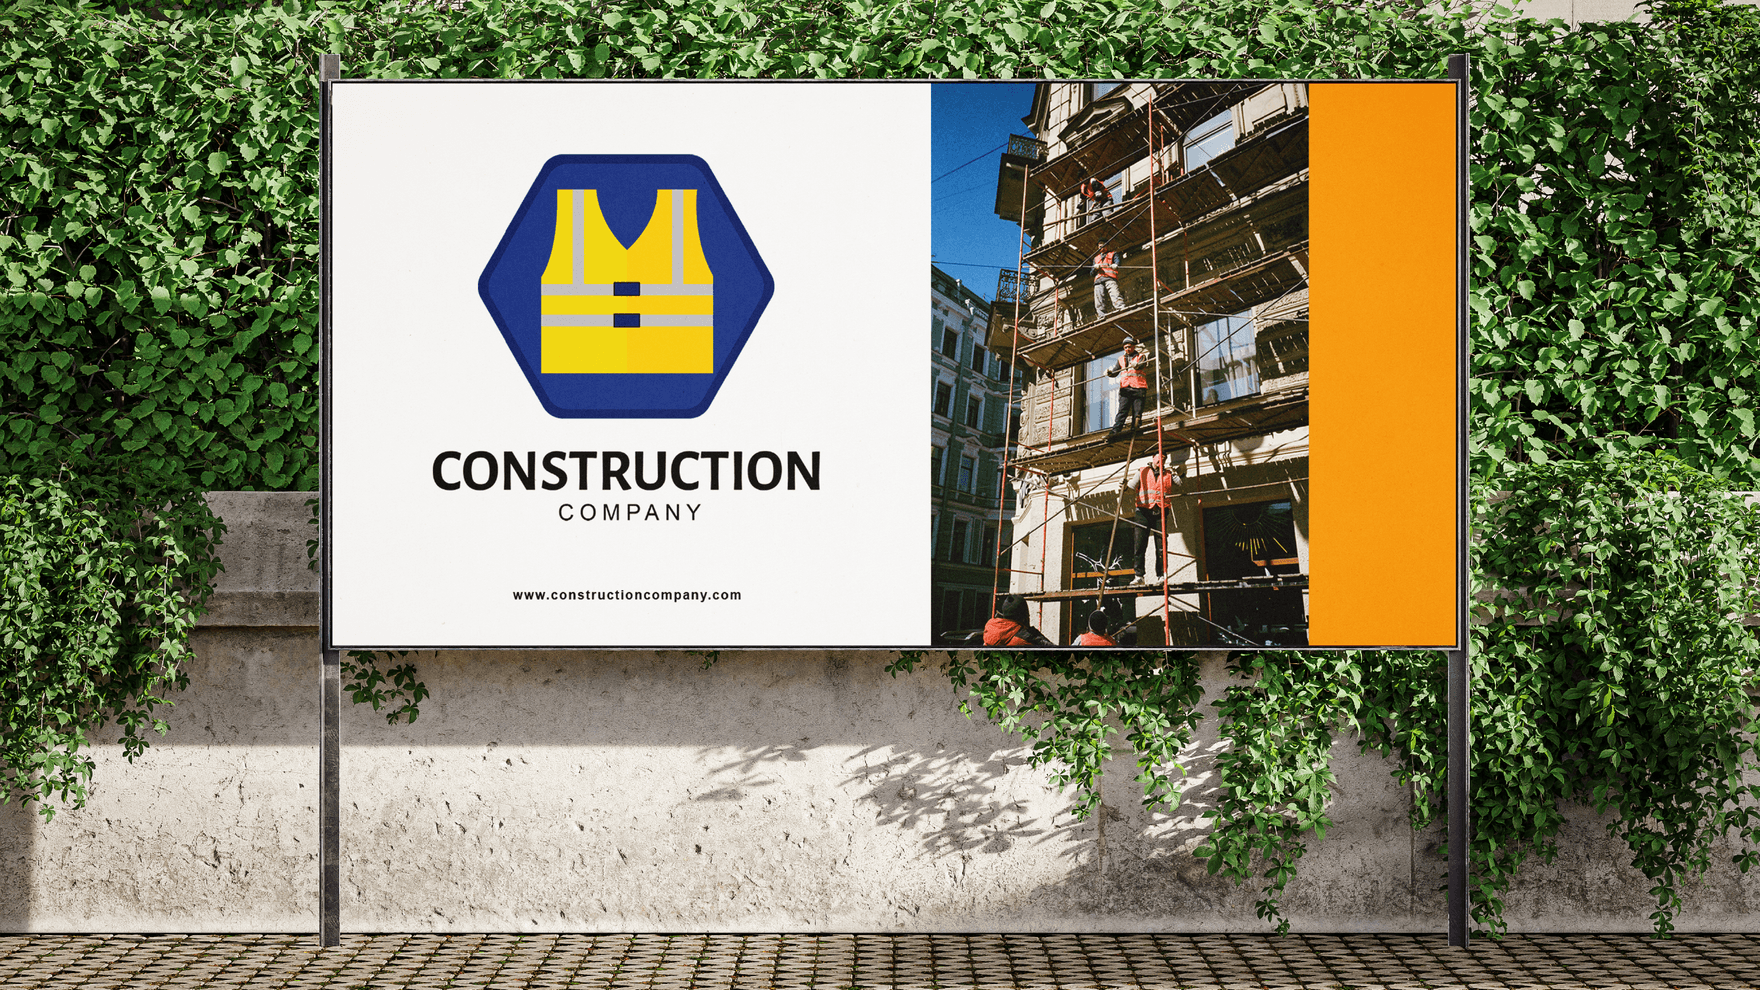 Construction Safety Vest Logo